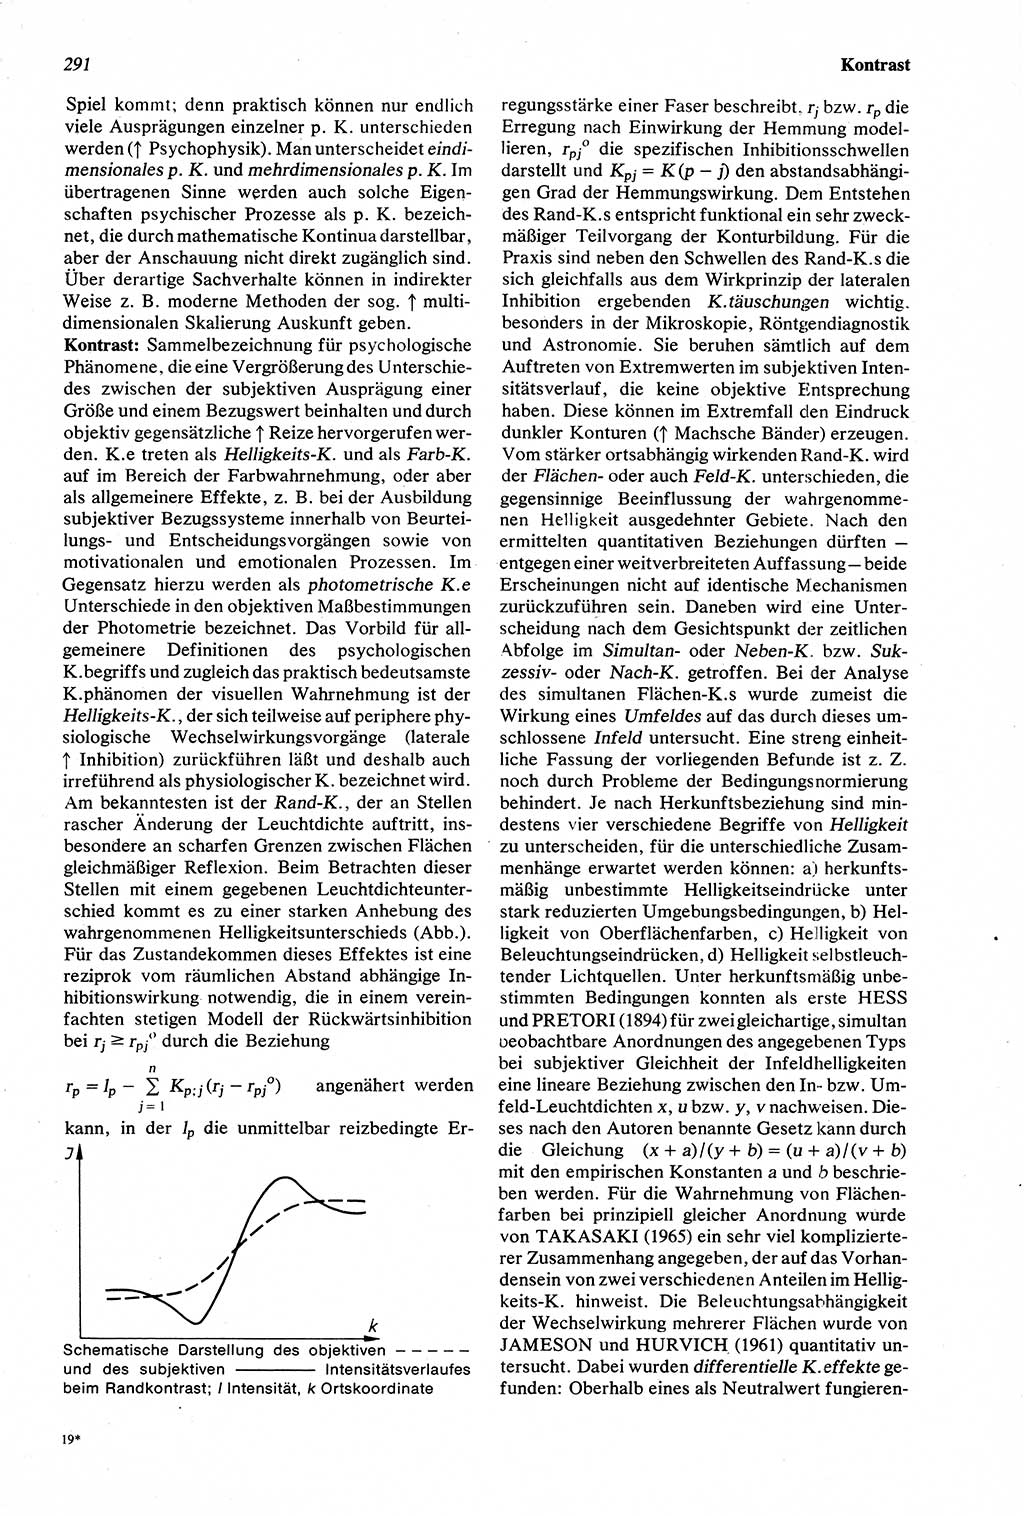 Wörterbuch der Psychologie [Deutsche Demokratische Republik (DDR)] 1976, Seite 291 (Wb. Psych. DDR 1976, S. 291)